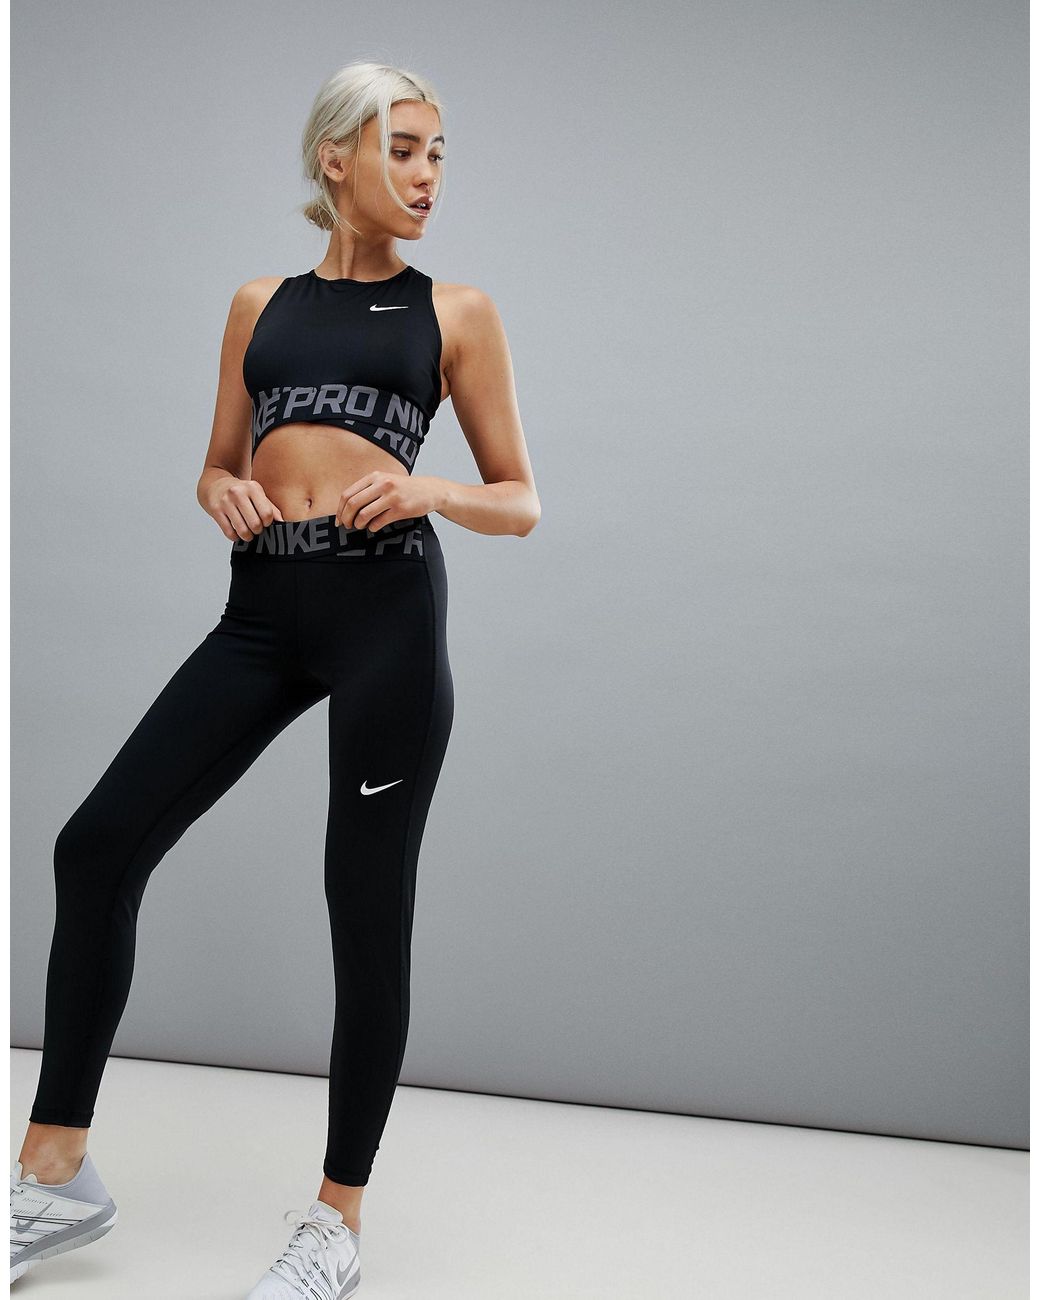 Nike Pro Collant 365 - Bleu foncé/Noir/Blanc Femme